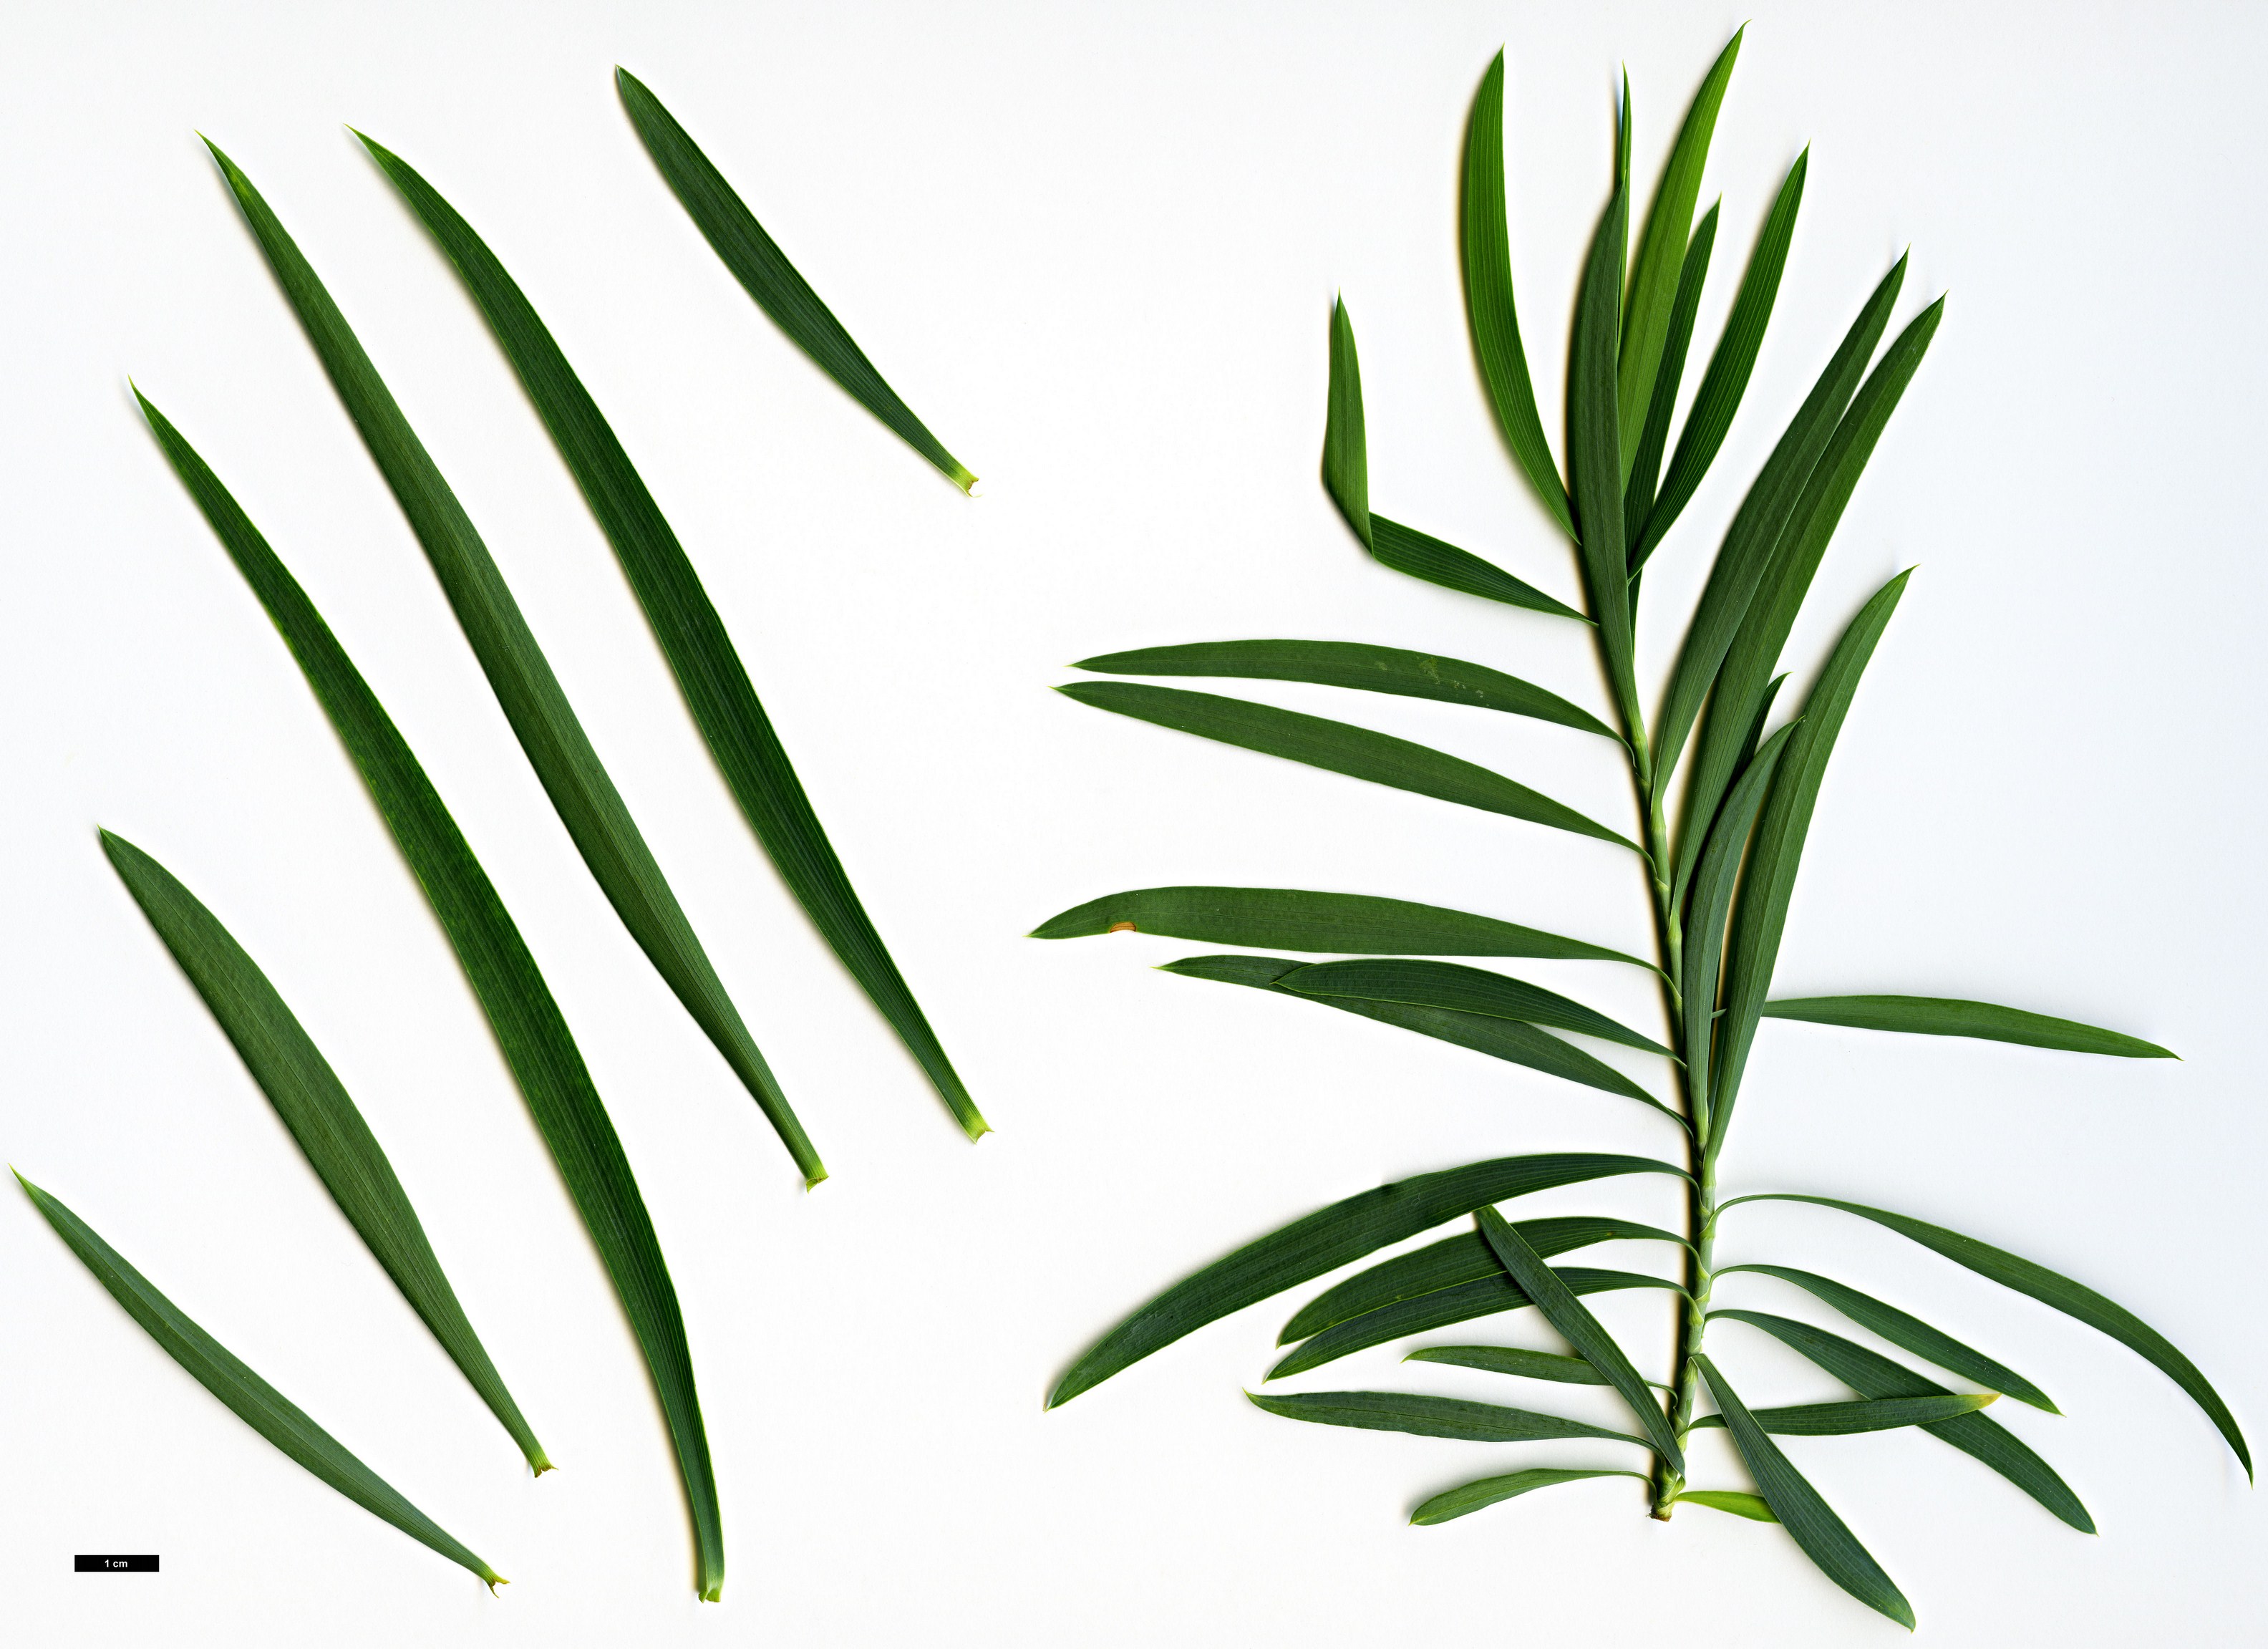 High resolution image: Family: Apiaceae - Genus: Bupleurum - Taxon: salicifolium